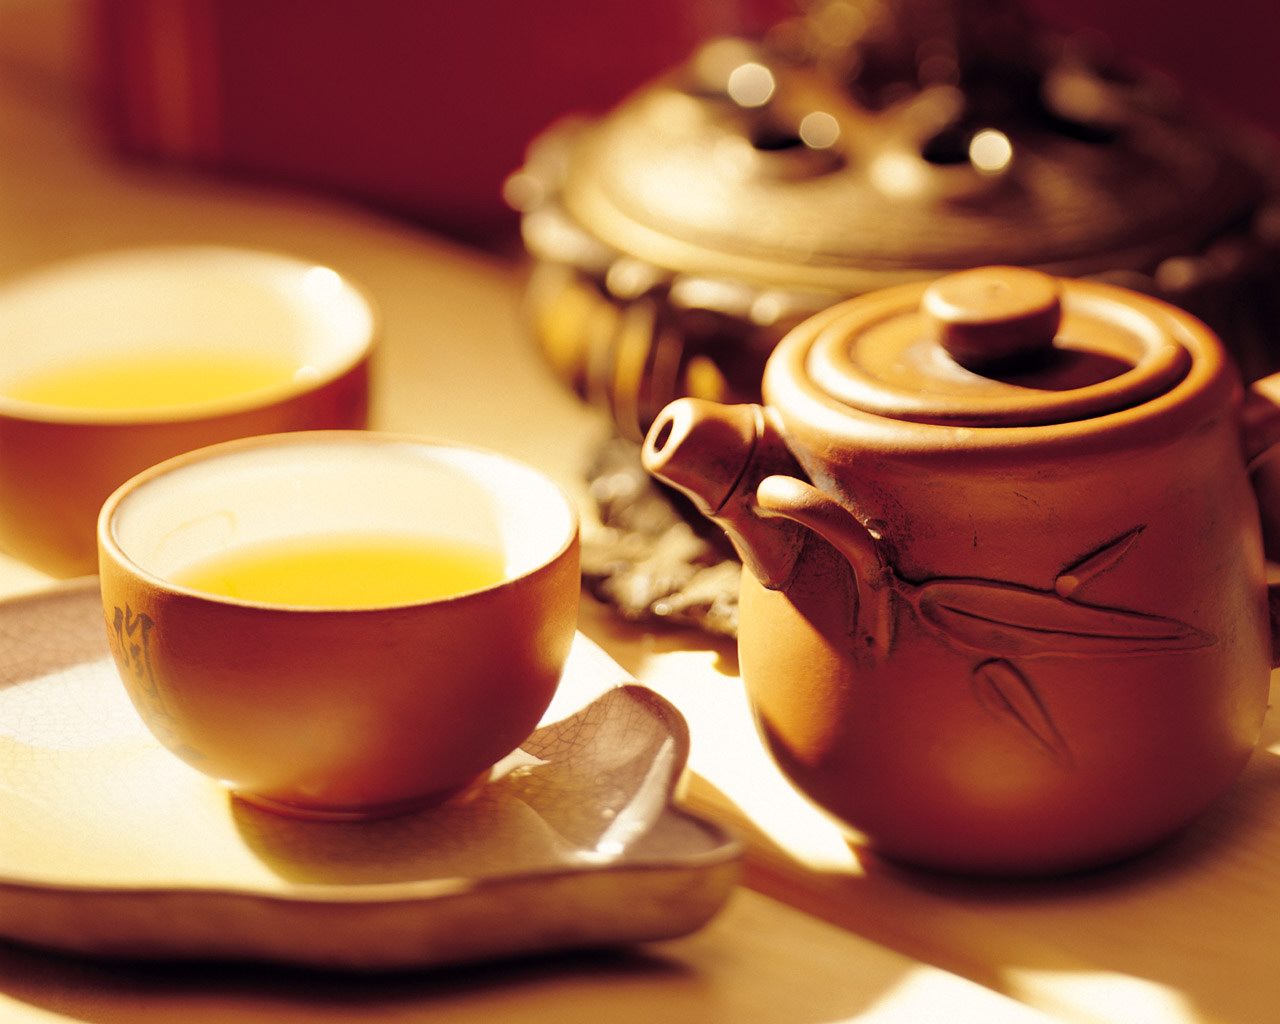 ShanamTruyện ngắn: Chén trà của cụ Mến - Shanam